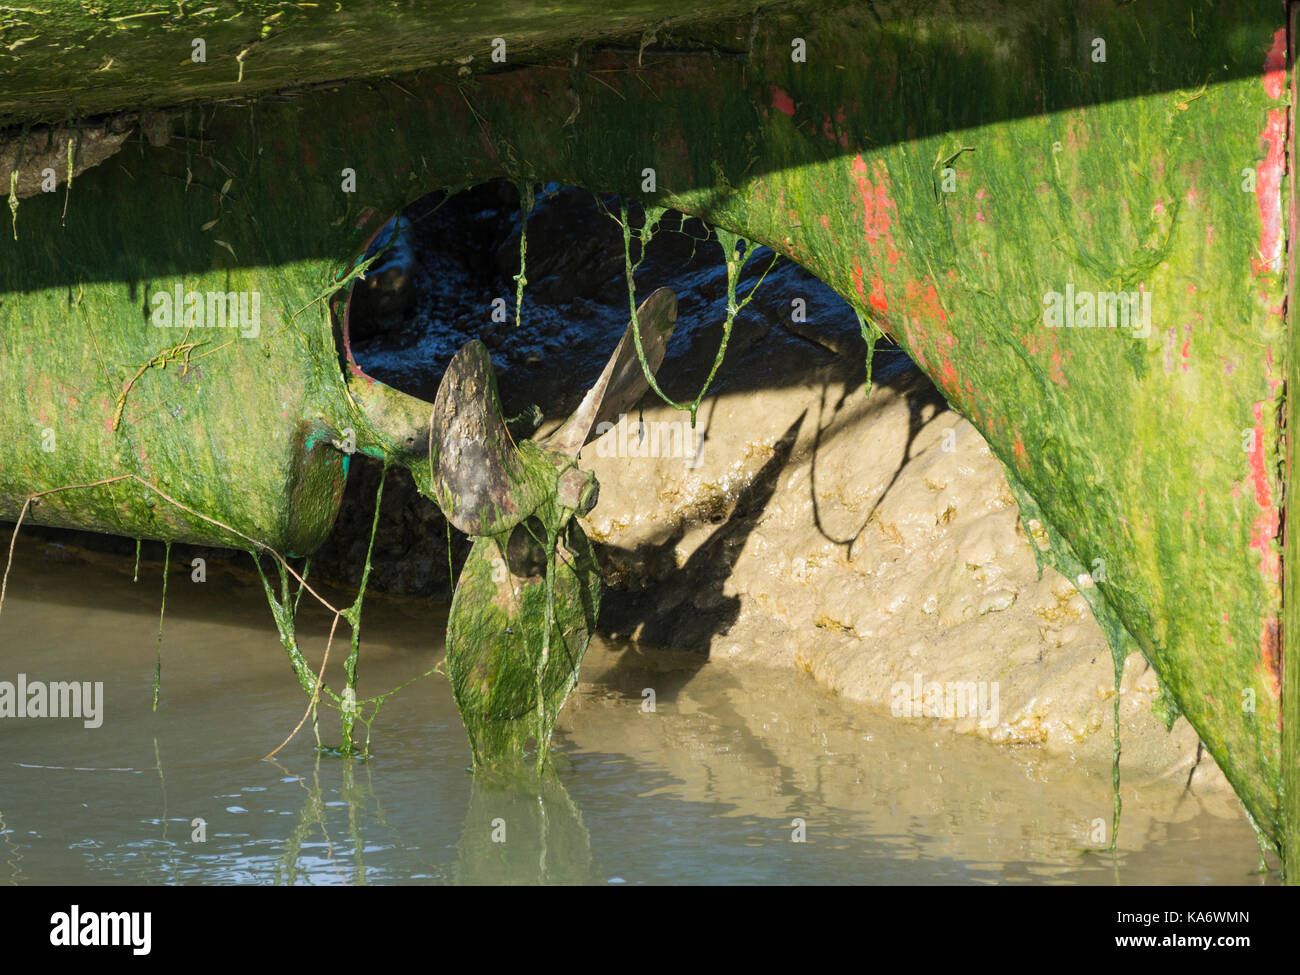 Rumpf des Bootes aus dem Wasser, das die Propeller und Ruder in grün Algen bedeckt. Stockfoto